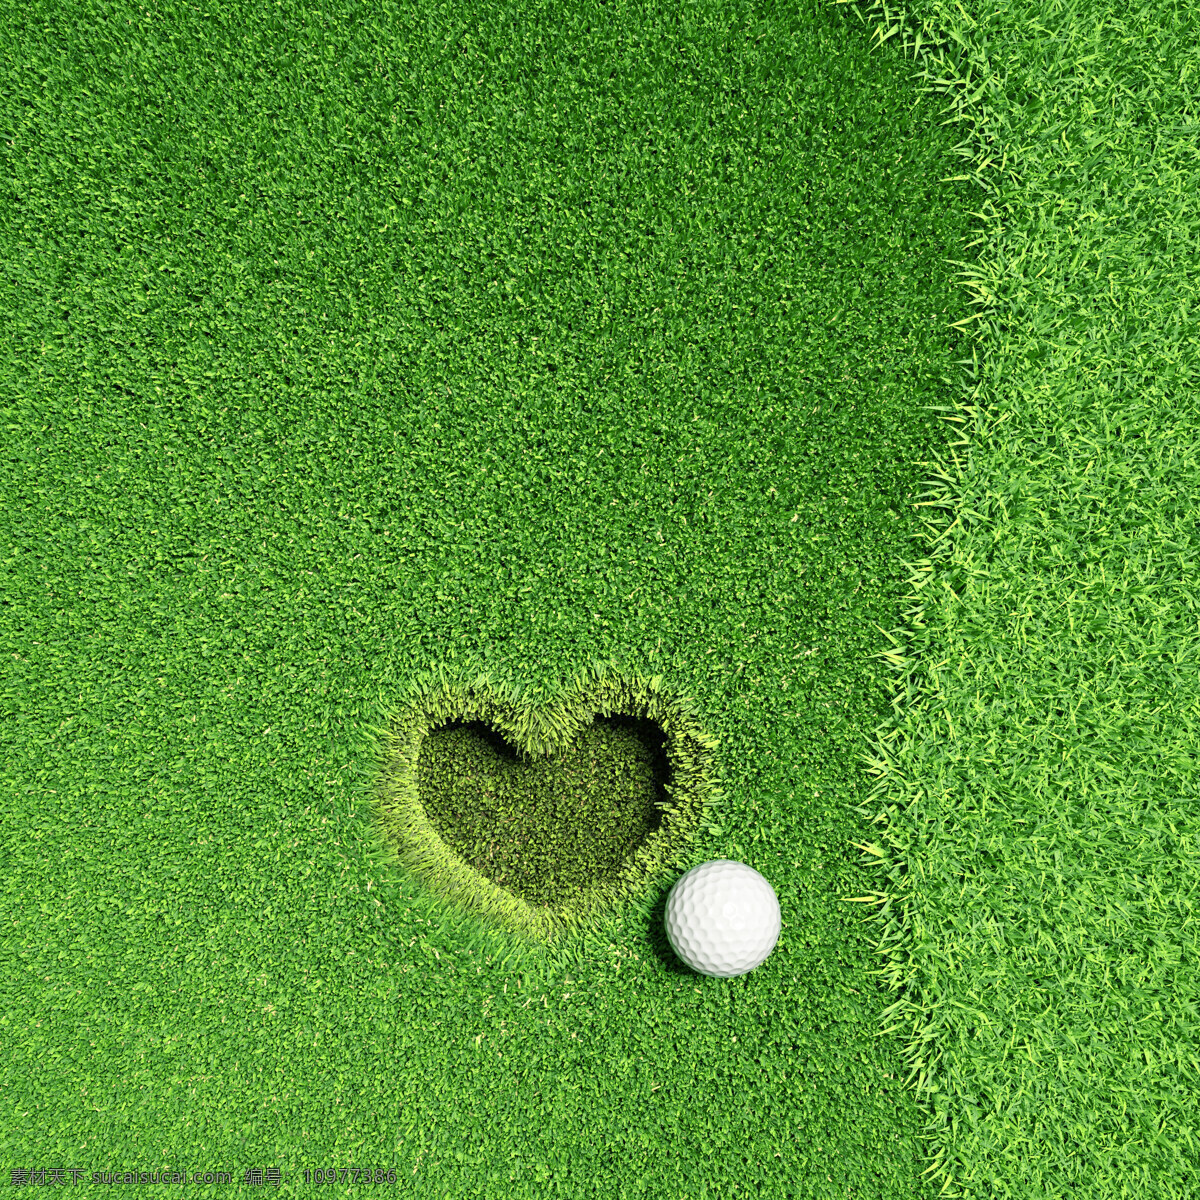 高尔夫球 心形 洞 草地 草坪 运动 健身锻炼 打高尔夫 体育运动 生活百科 绿色